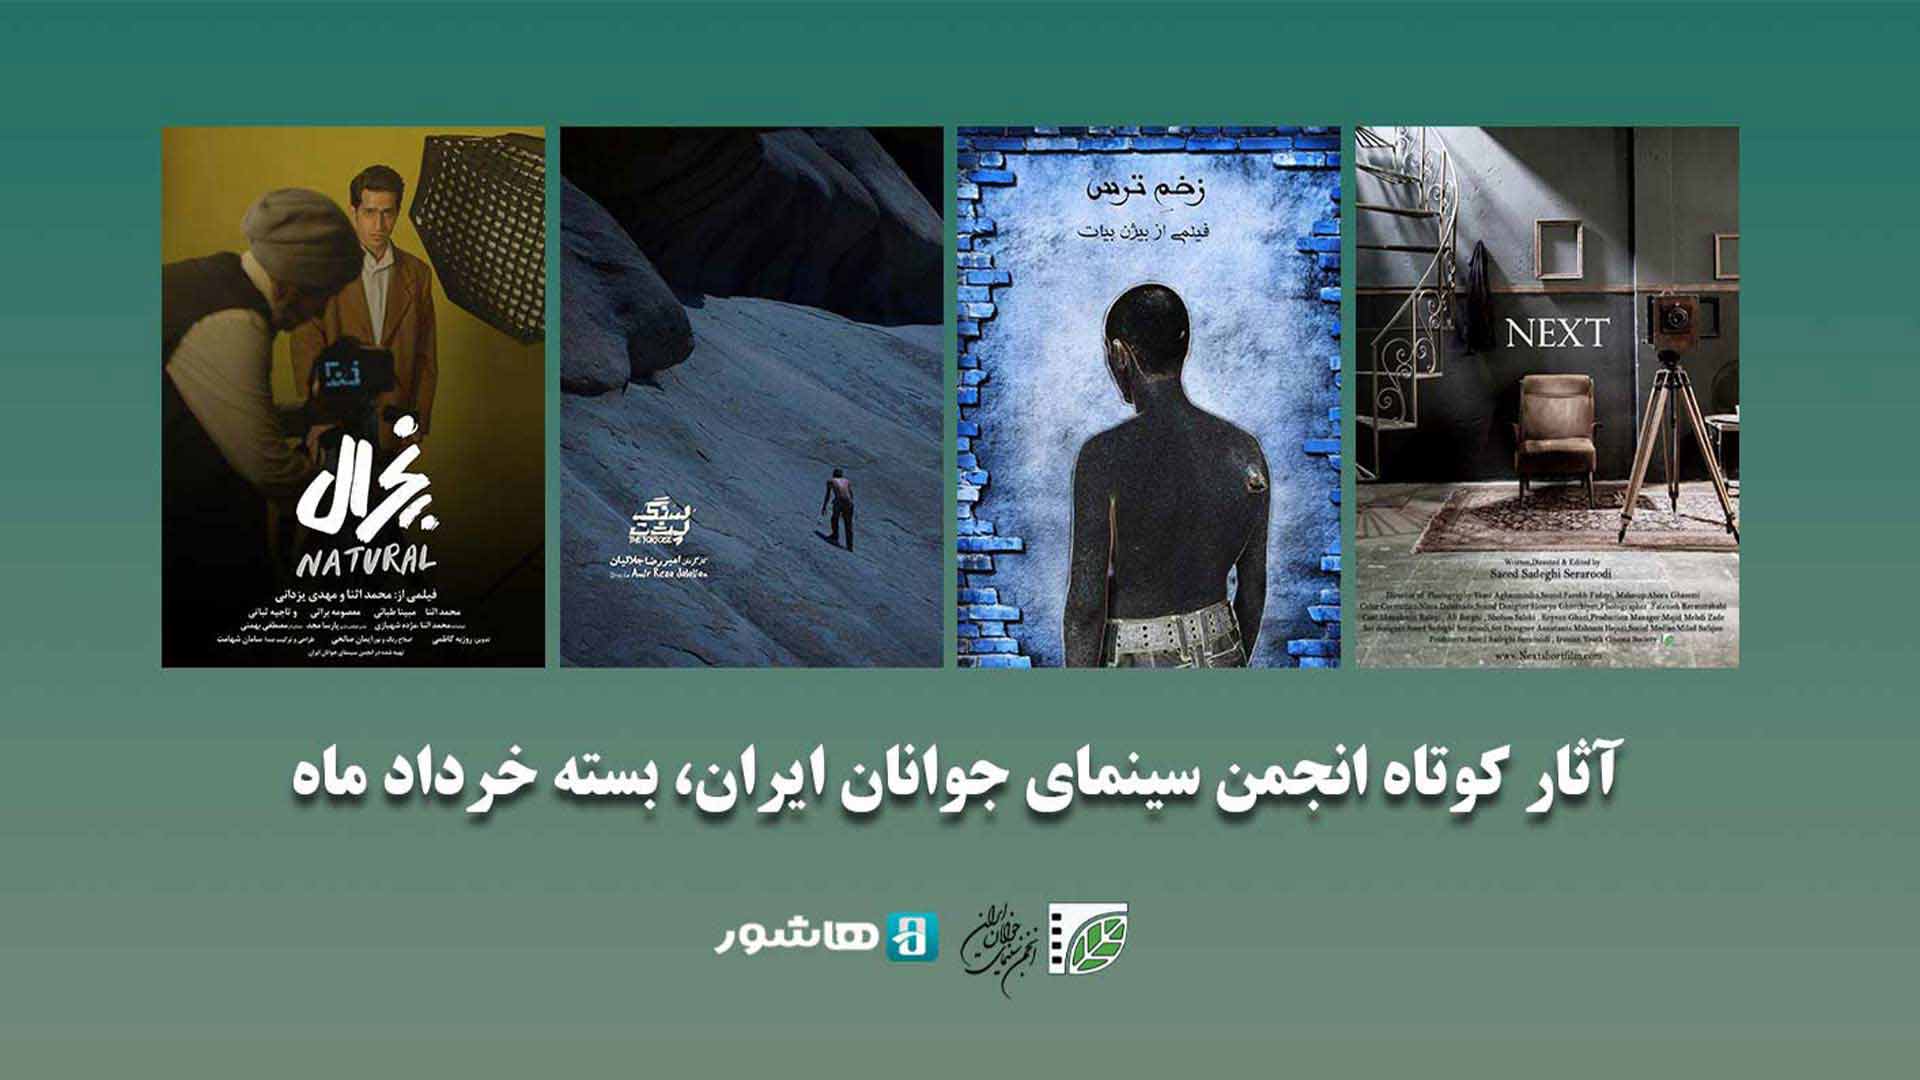 اکران آنلاین چهار فیلم کوتاه از ژانرهای رازآلود و فانتزی